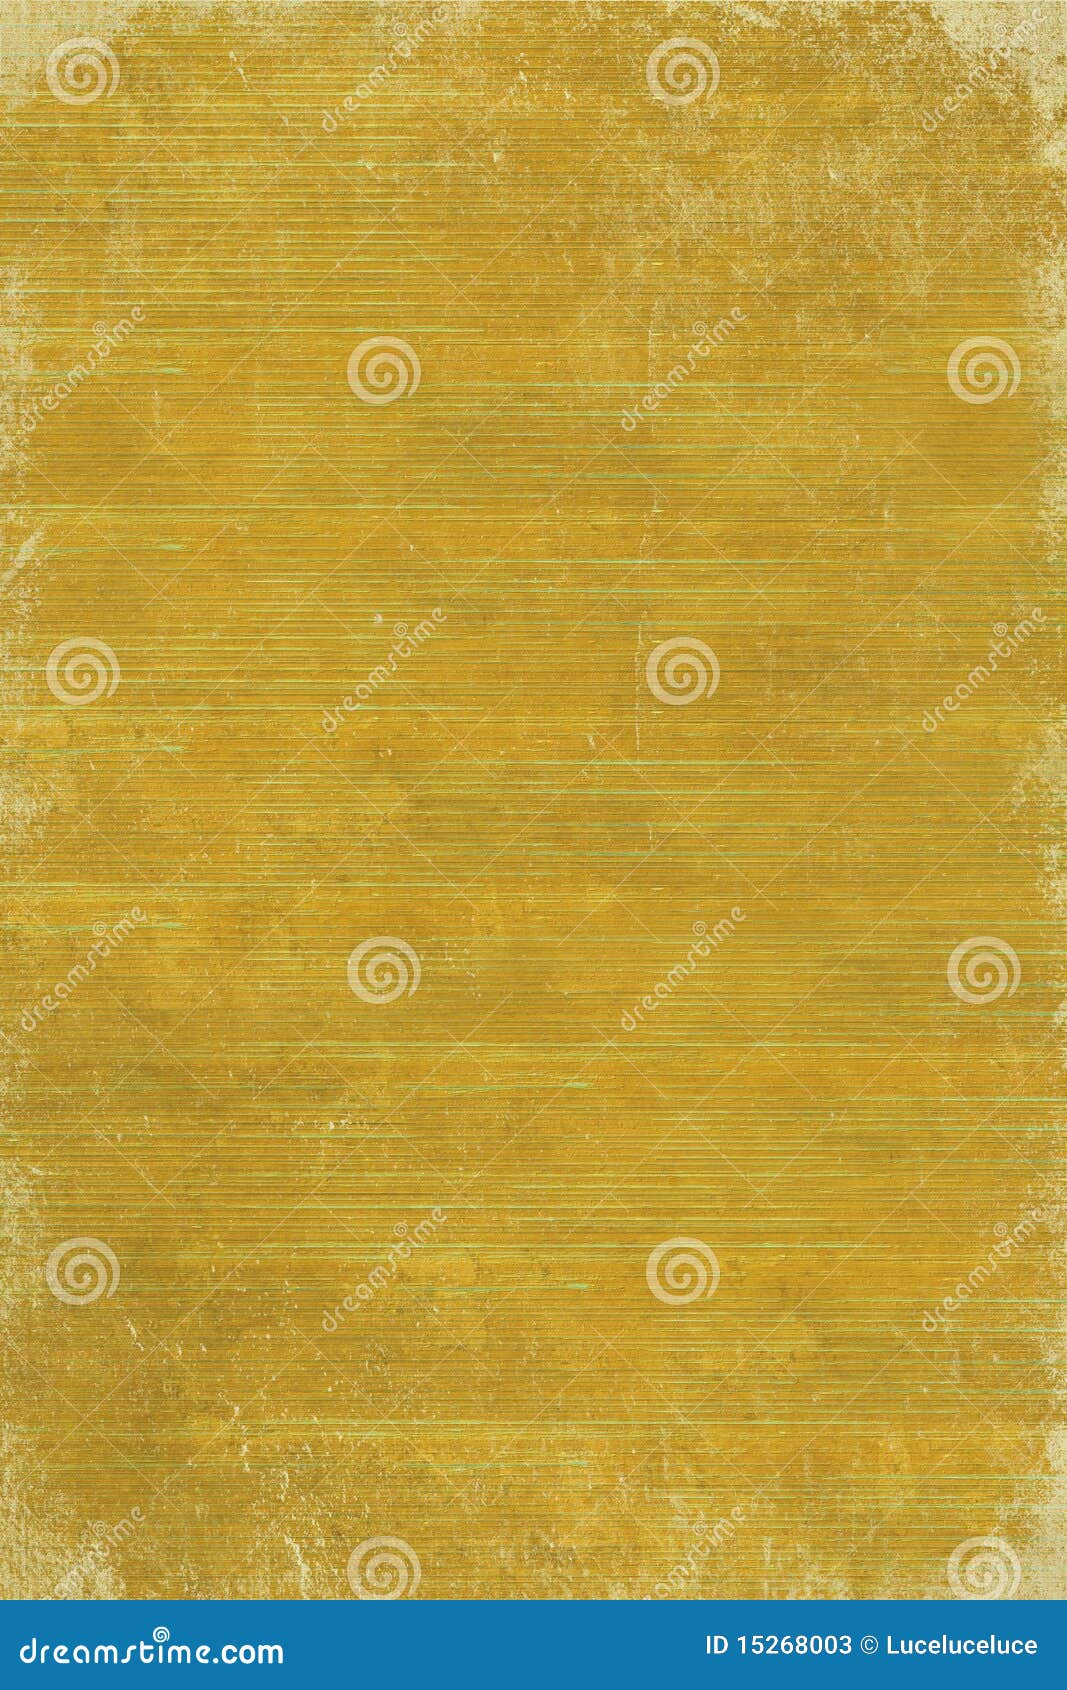 yellow wood slats with grunge edge